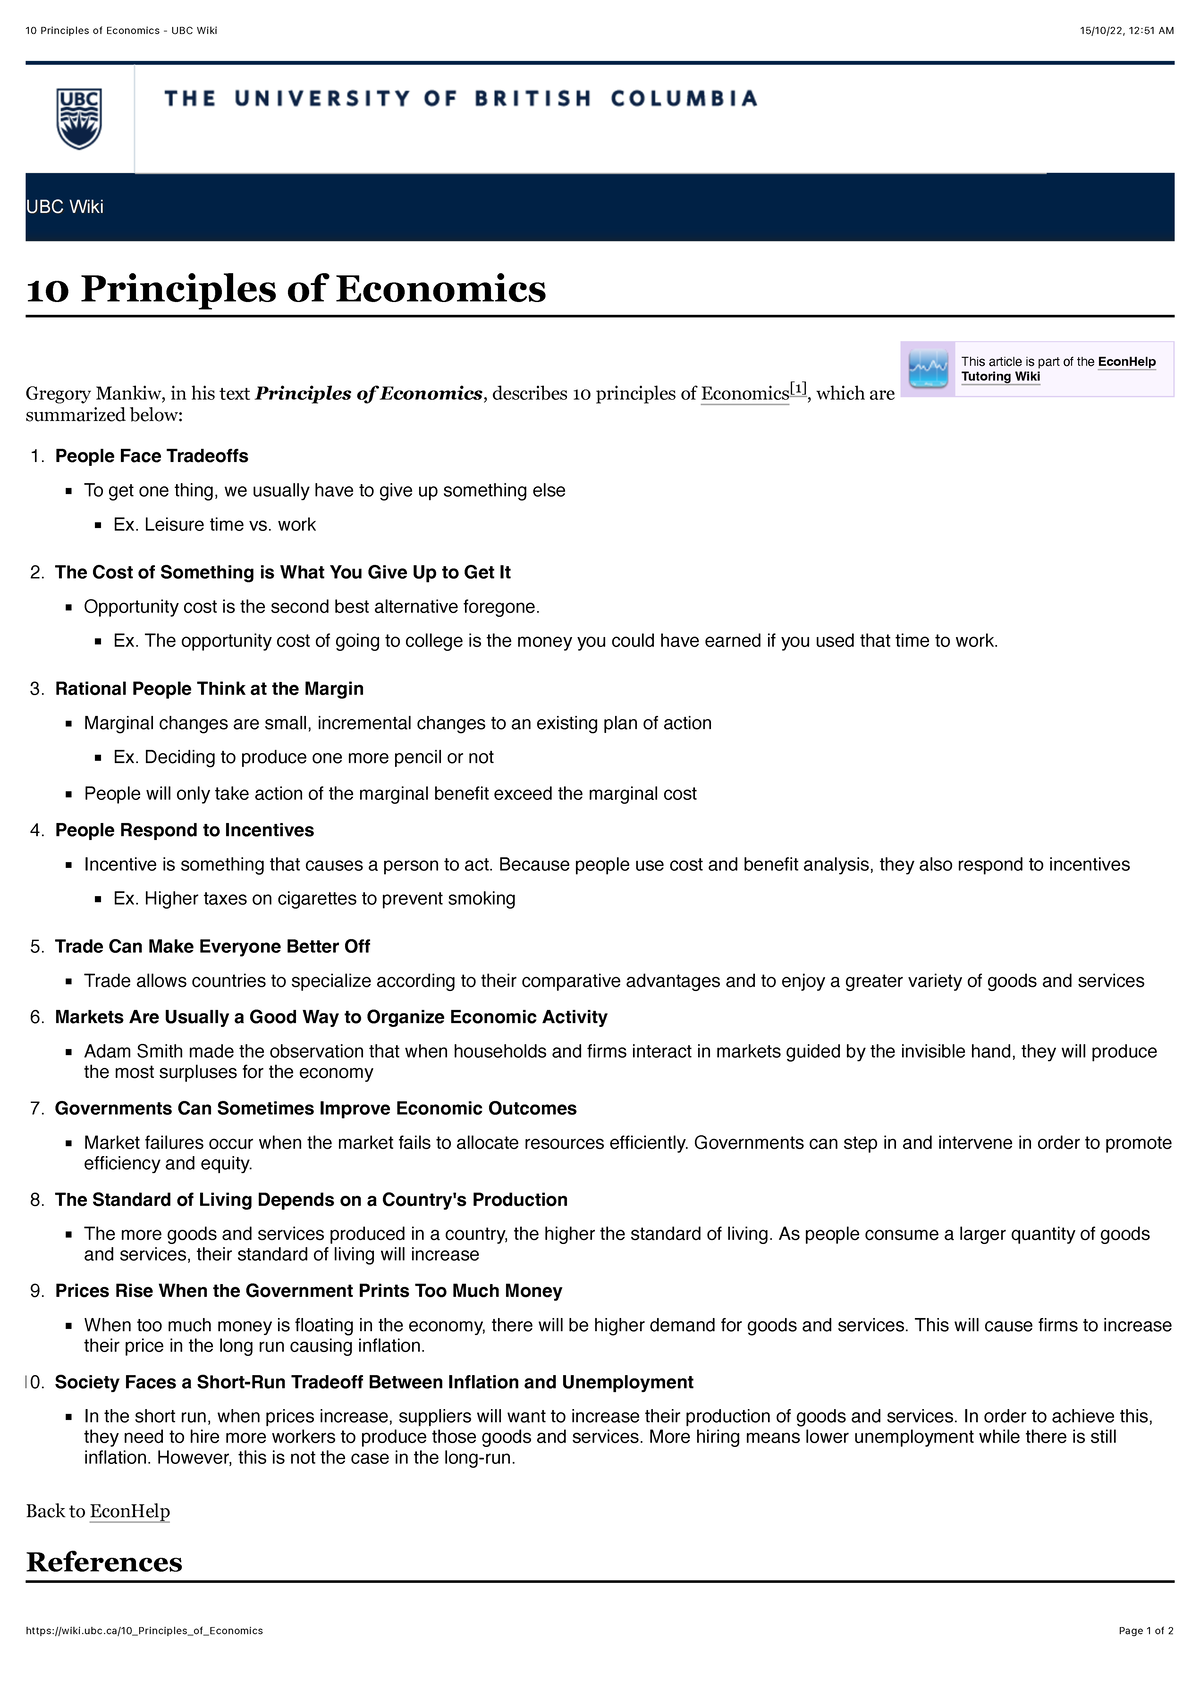 ubc economics thesis